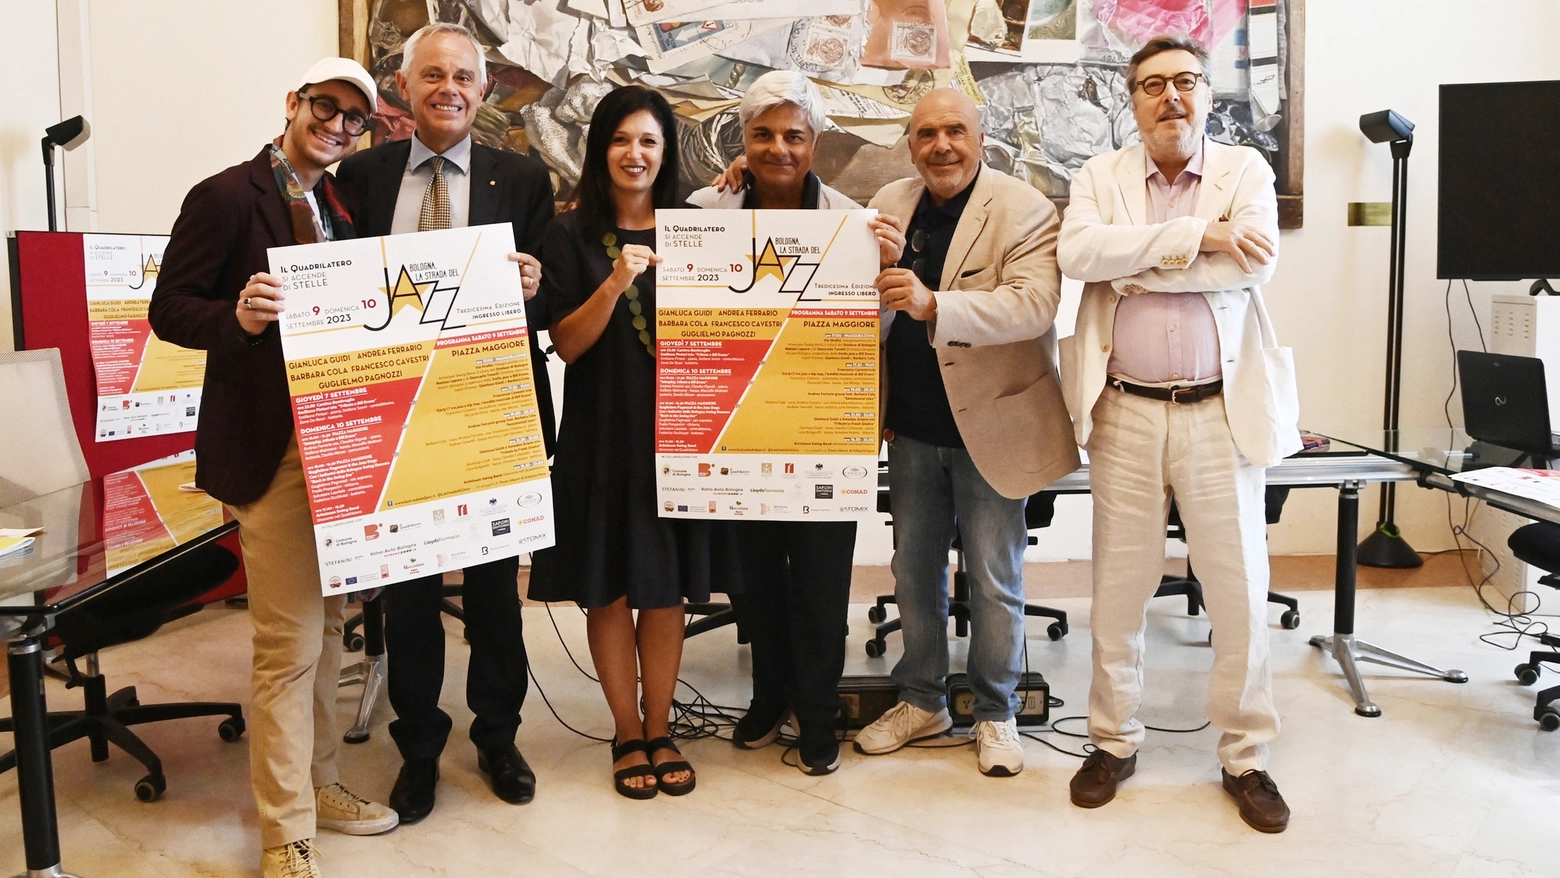 La strada del jazz a Bologna: la presentazione in conferenza stampa